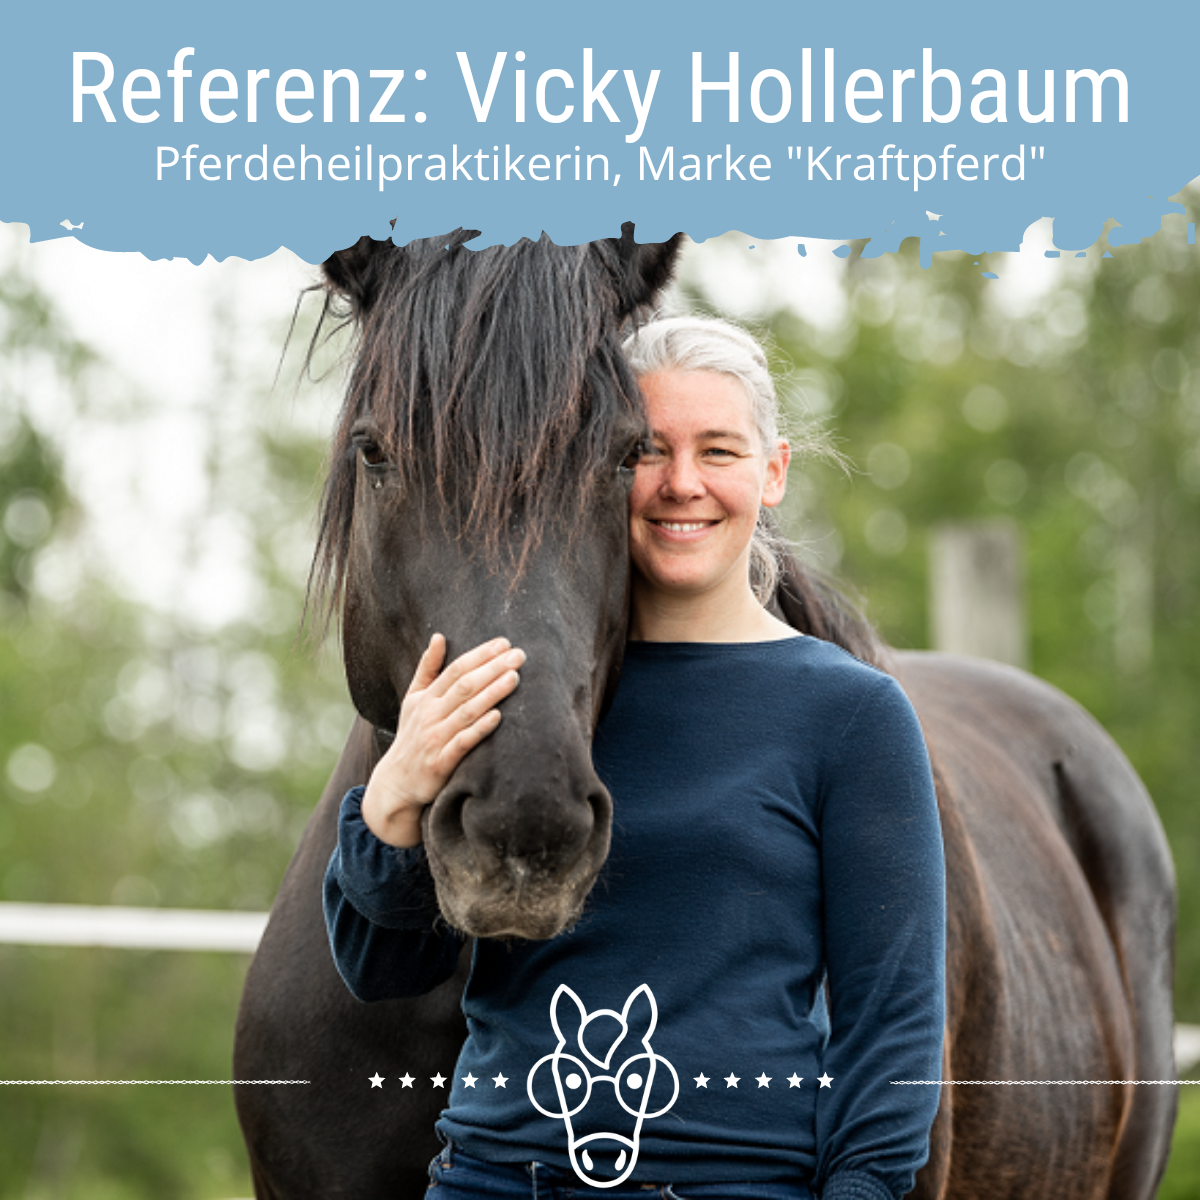 Referenz: Vicky Hollerbaum, Pferdeheilpraktikerin